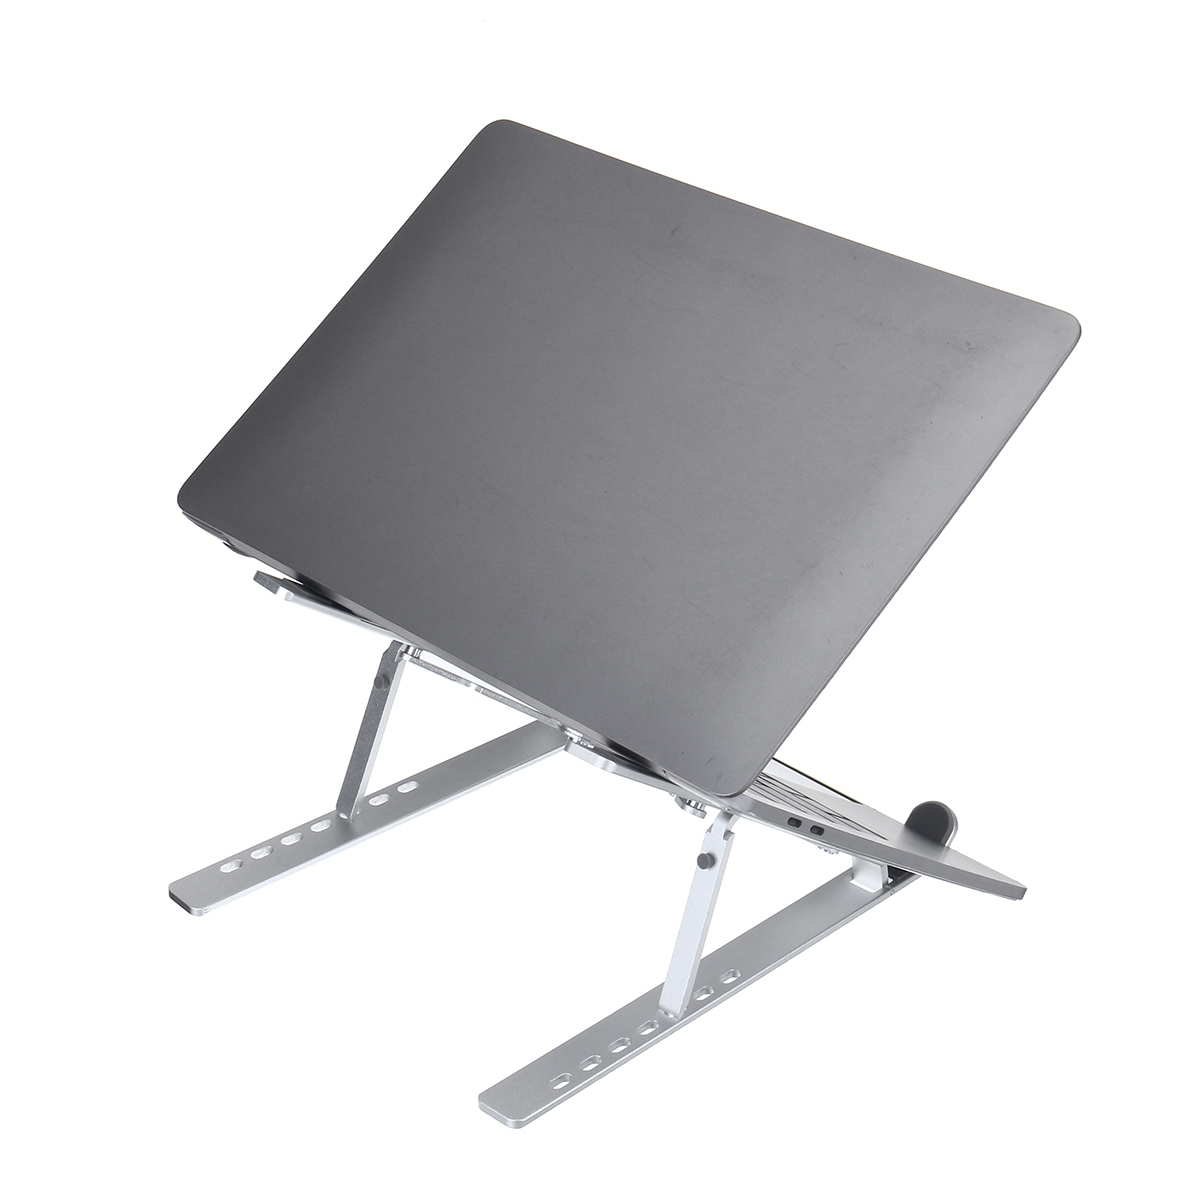 Adjustable-Foldable-Laptop-Stand-Non-slip-Desktop-Notebook-Holder-For-Macbook-1743091-12